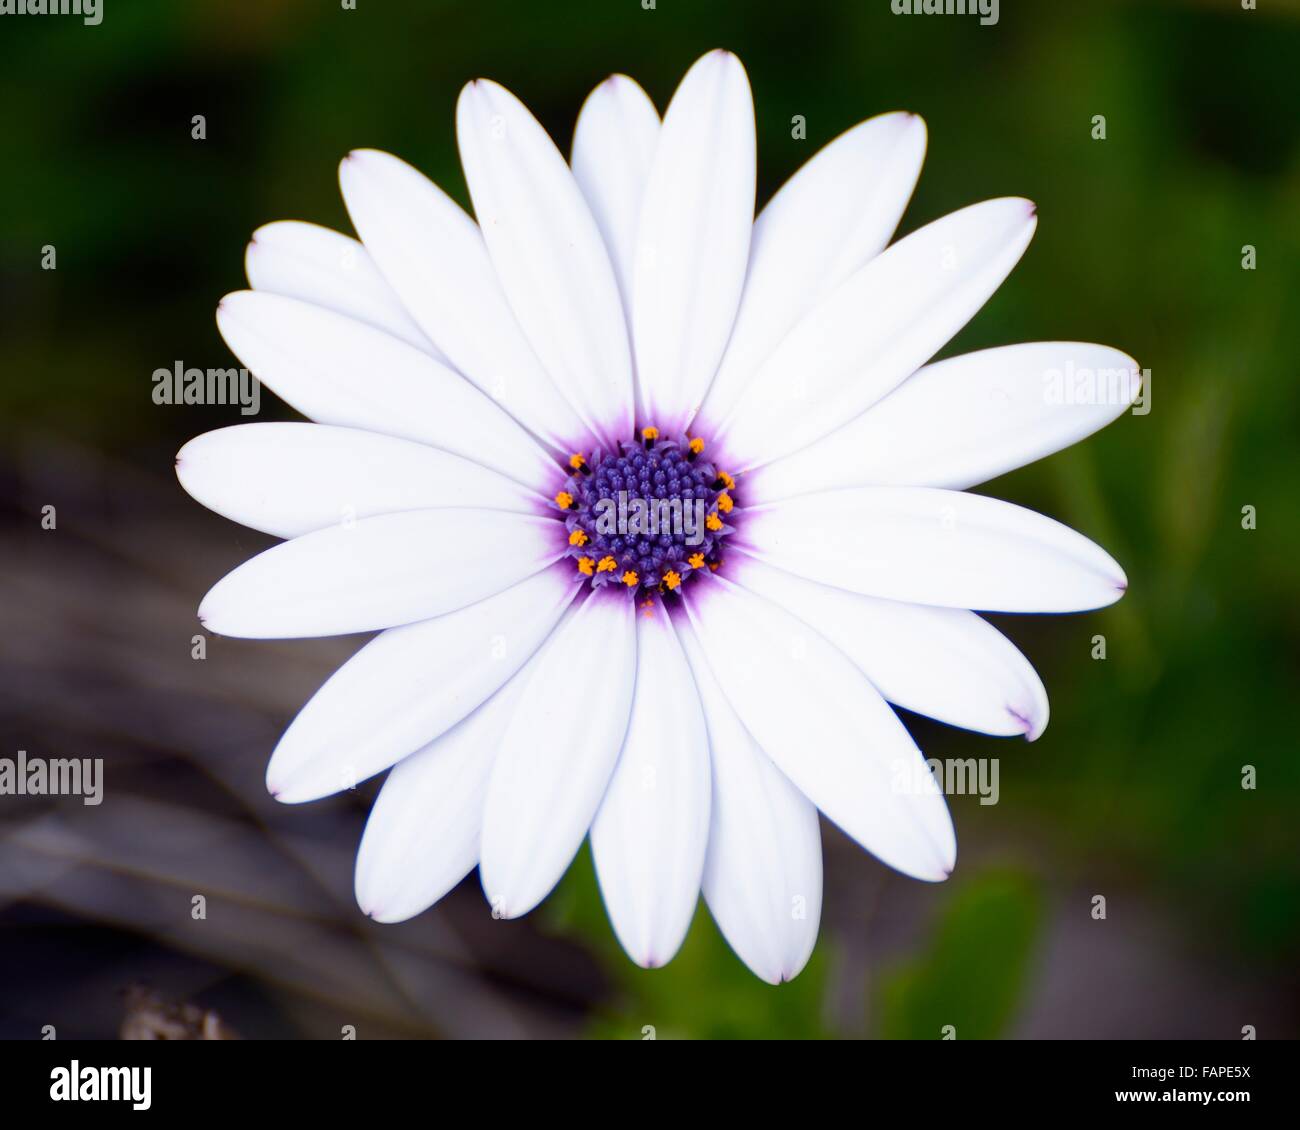 Daisy blanco y morado en el jardín Foto de stock